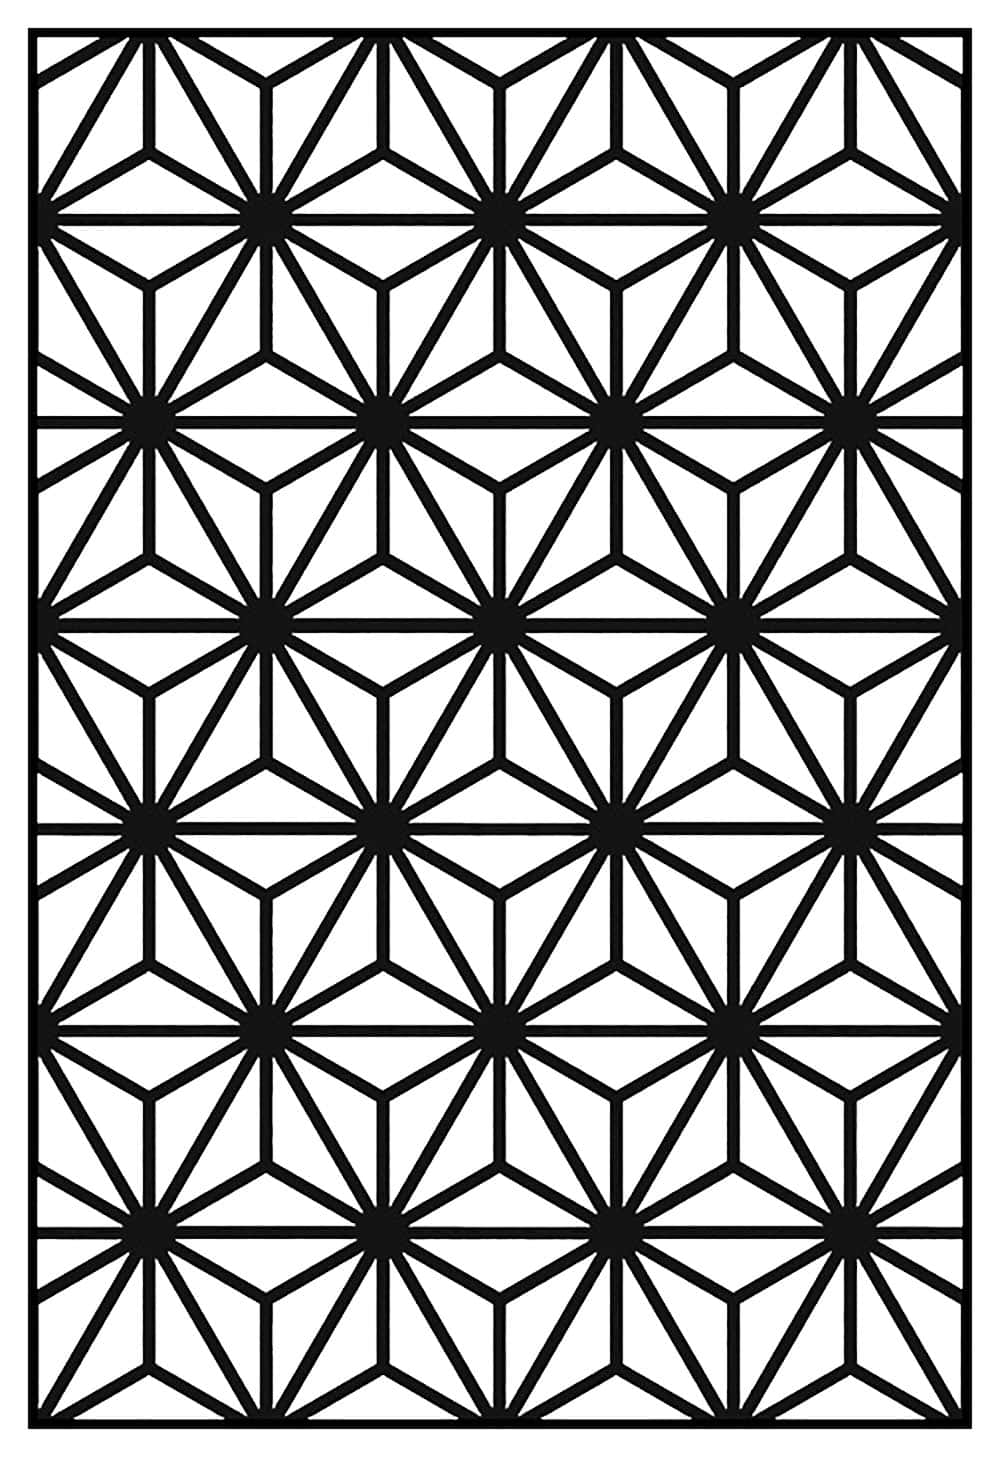 Immaginecon Motivo Geometrico A Cerchi In Bianco E Nero.